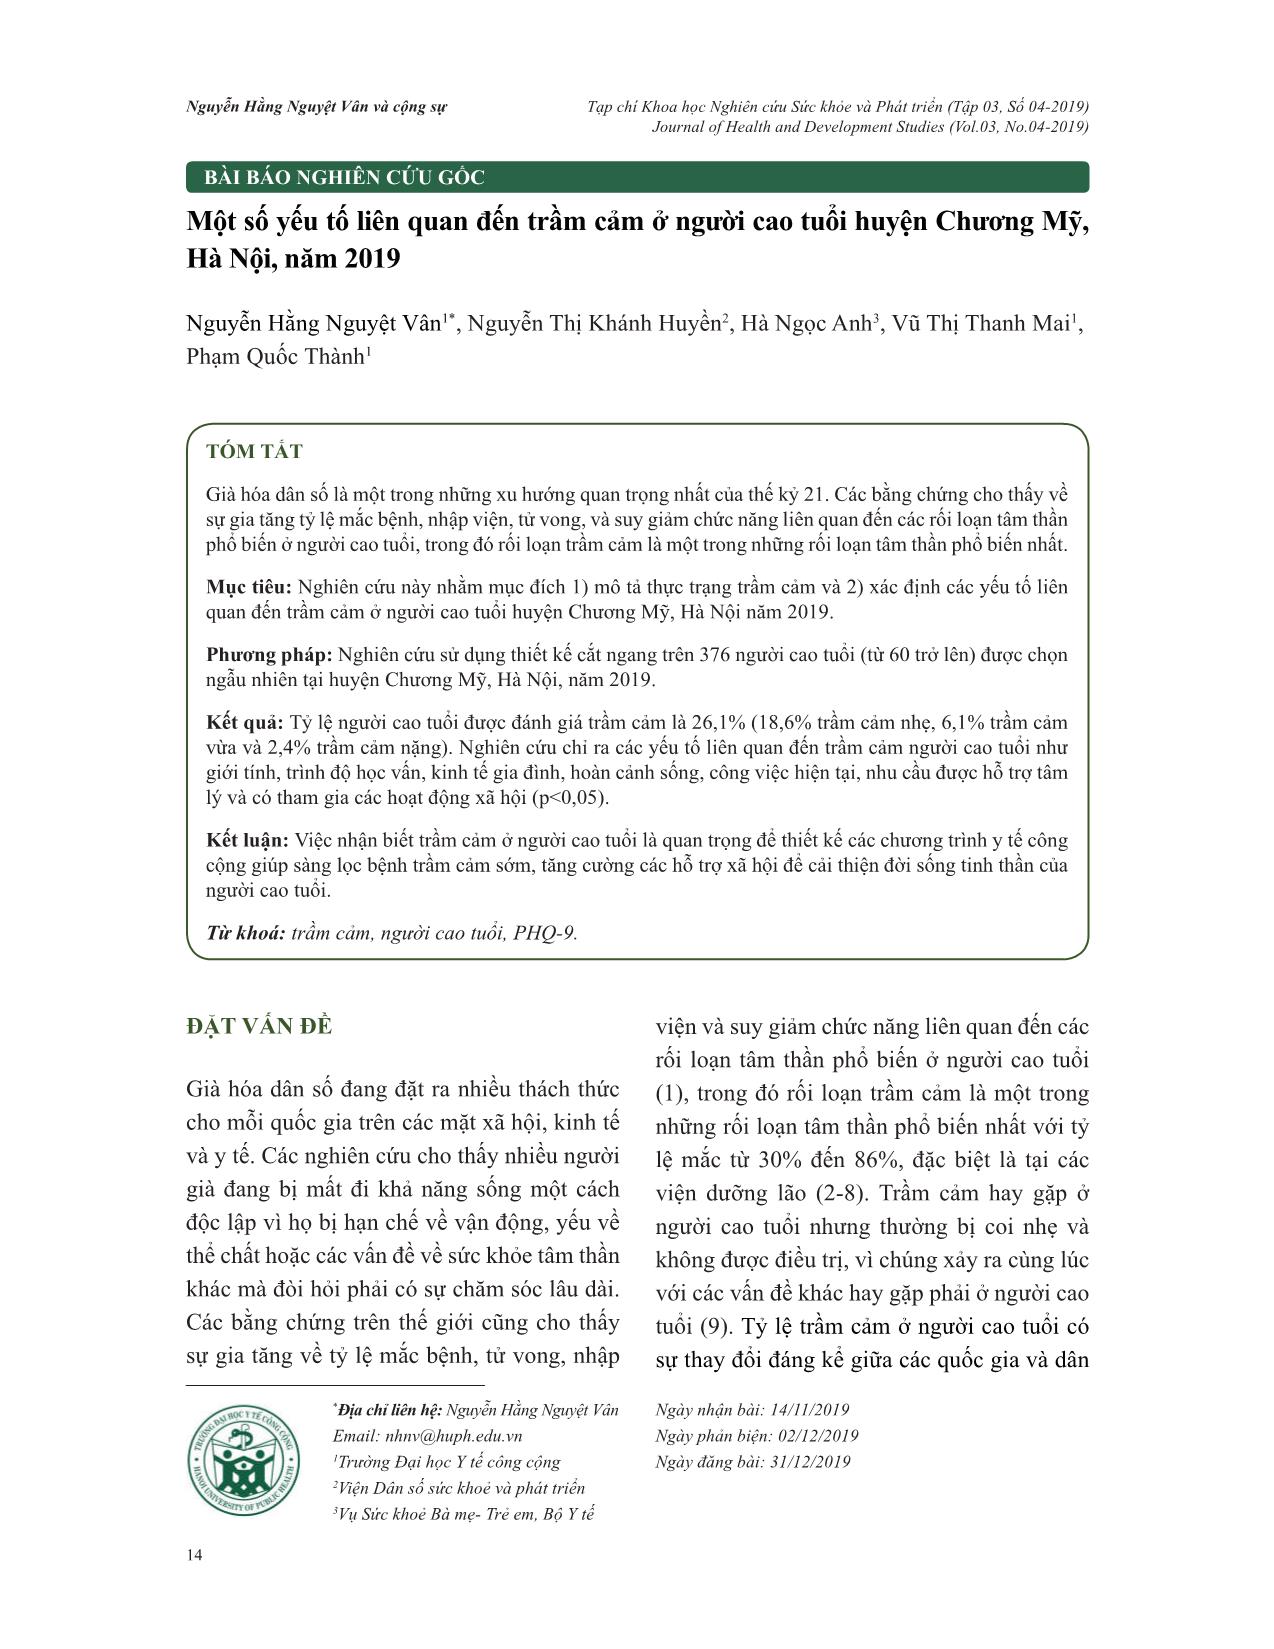 Một số yếu tố liên quan đến trầm cảm ở người cao tuổi huyện Chương Mỹ, Hà Nội, năm 2019 trang 1